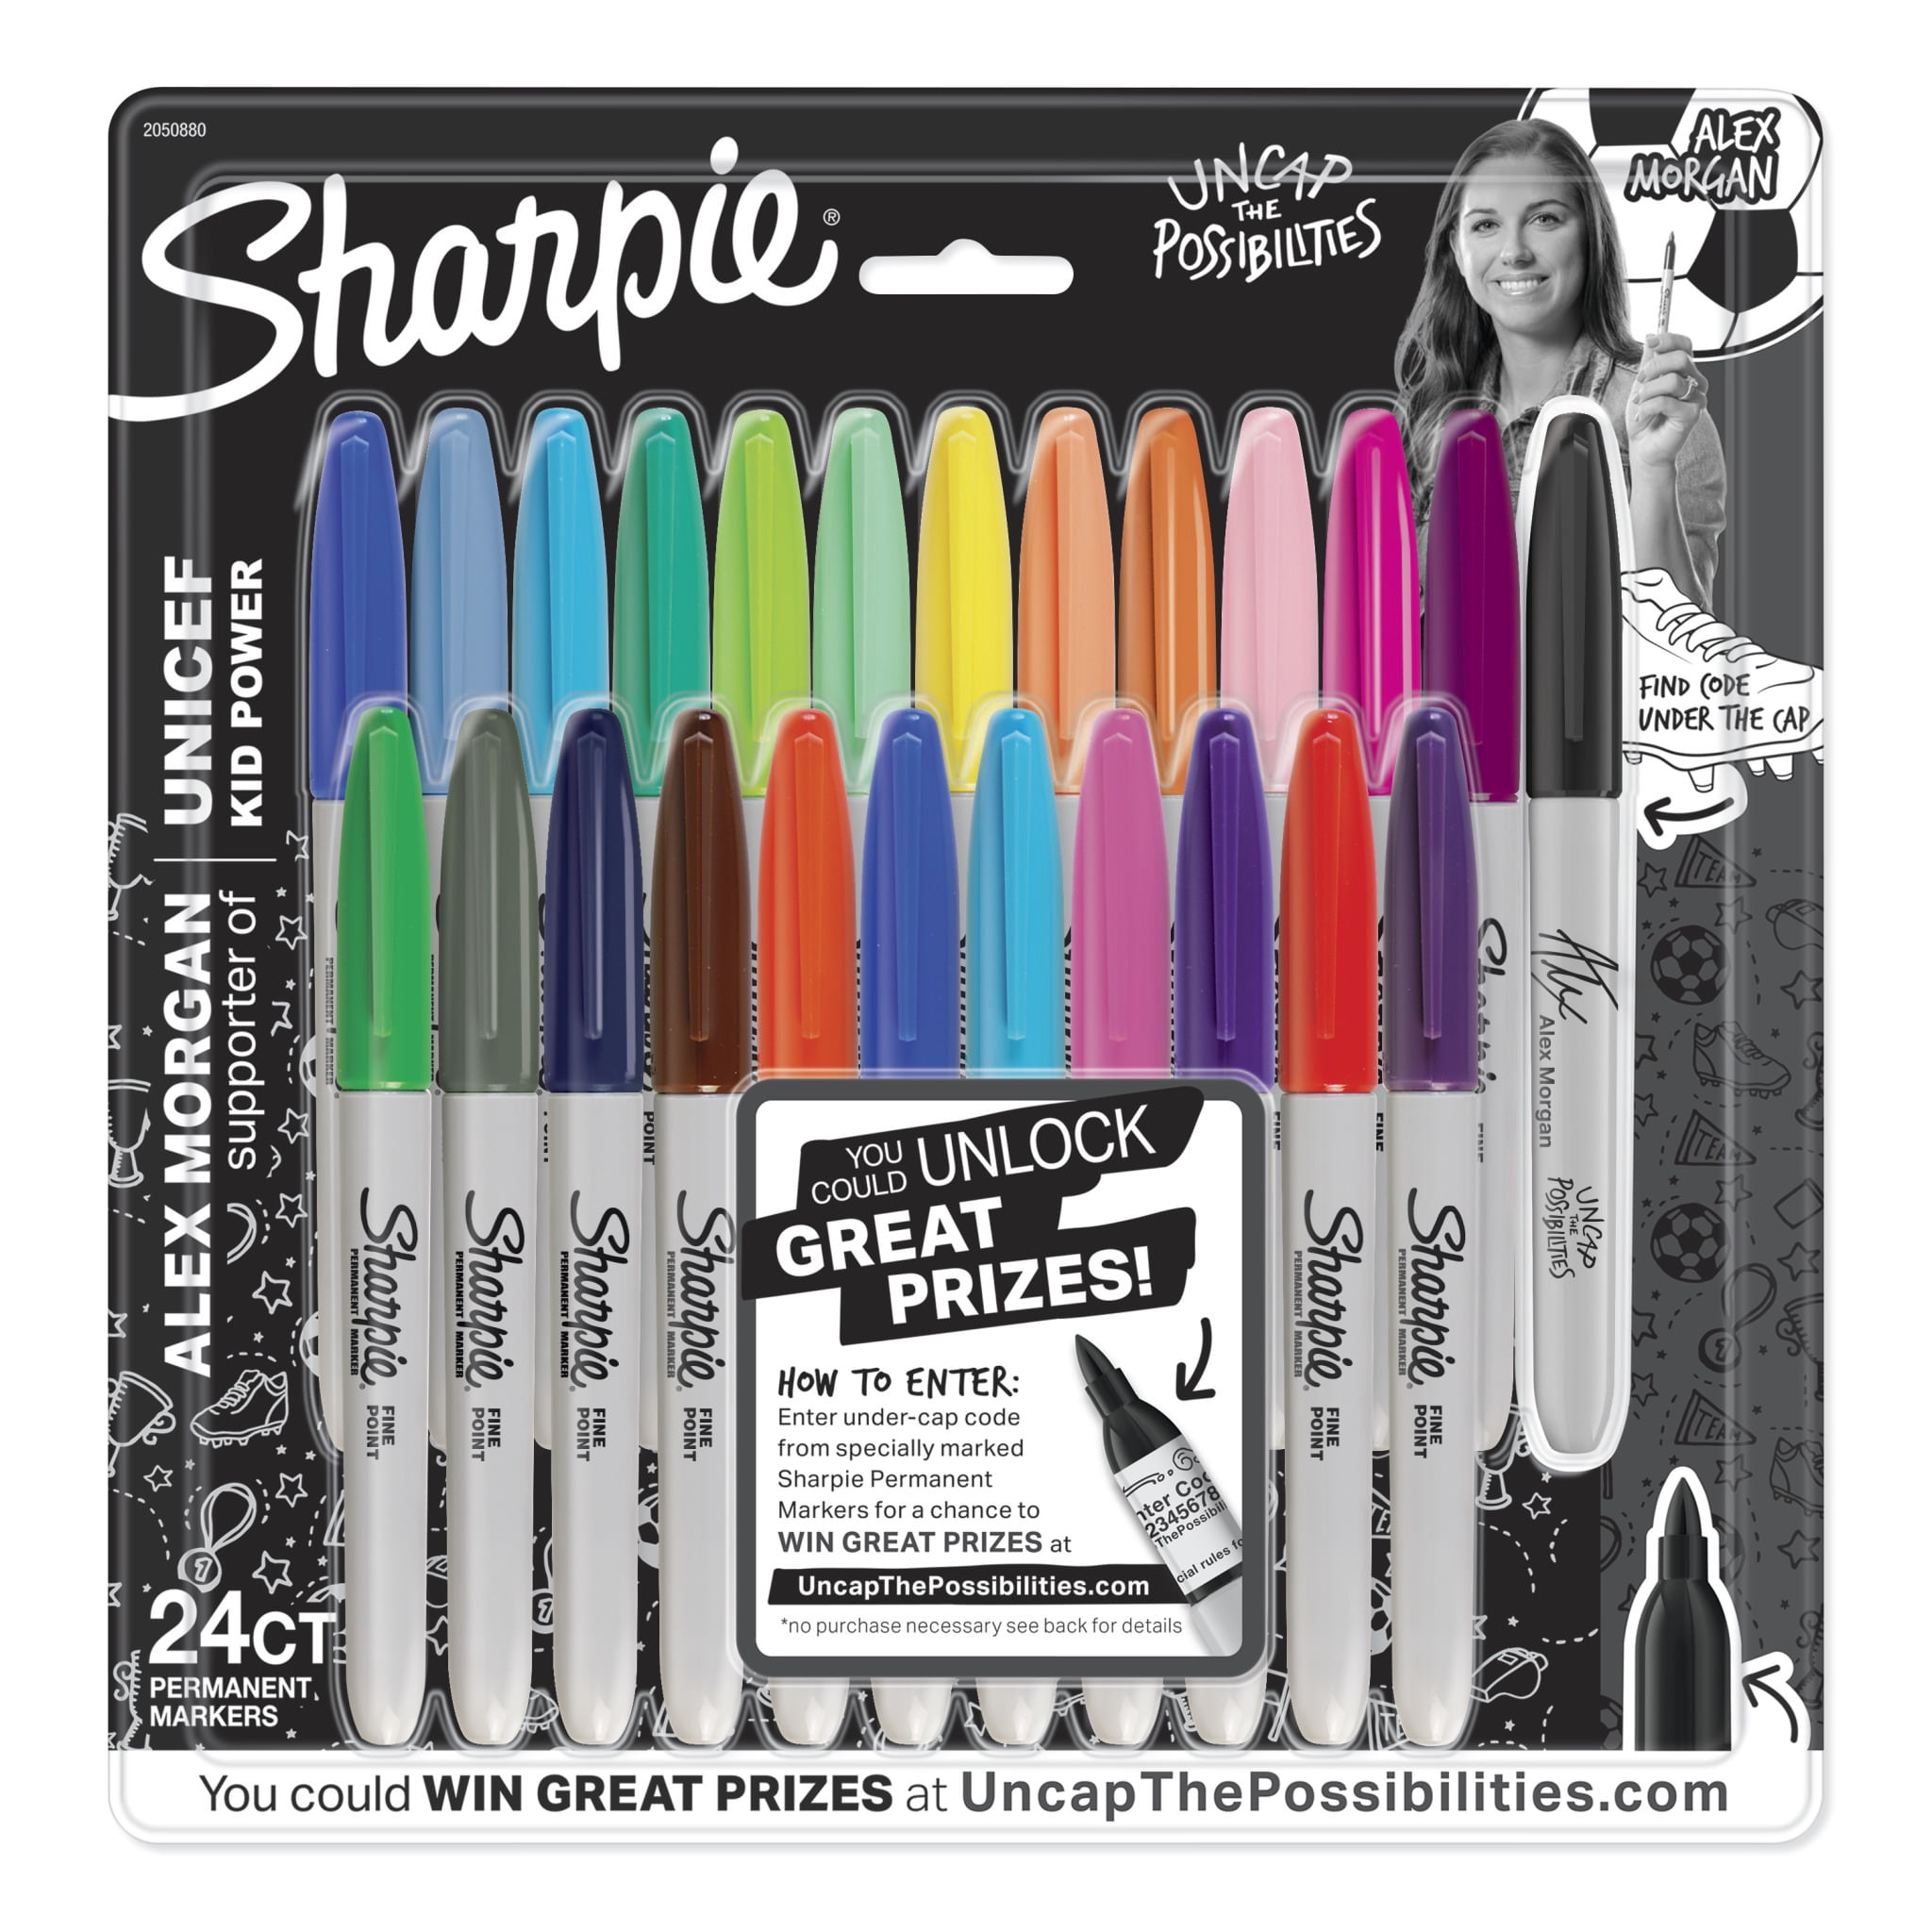 Sharpie Marker Fine 24pc Set - Meininger Art Supply